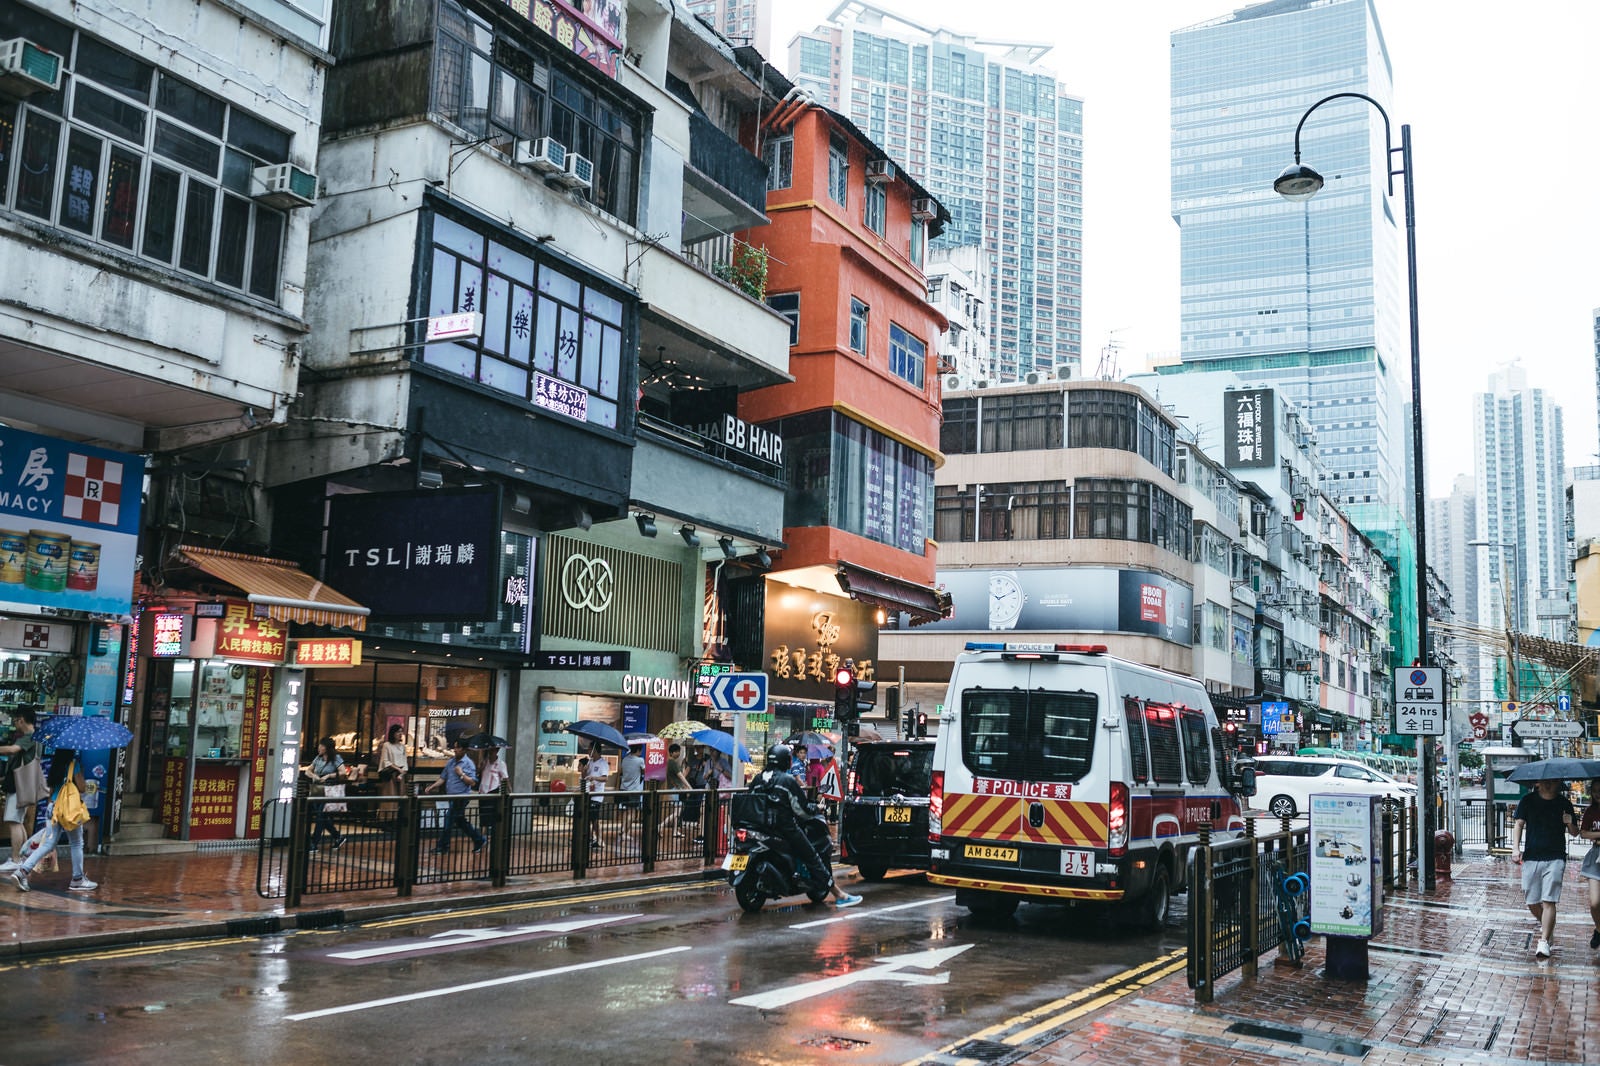 「香港の市街地と警察車両」の写真